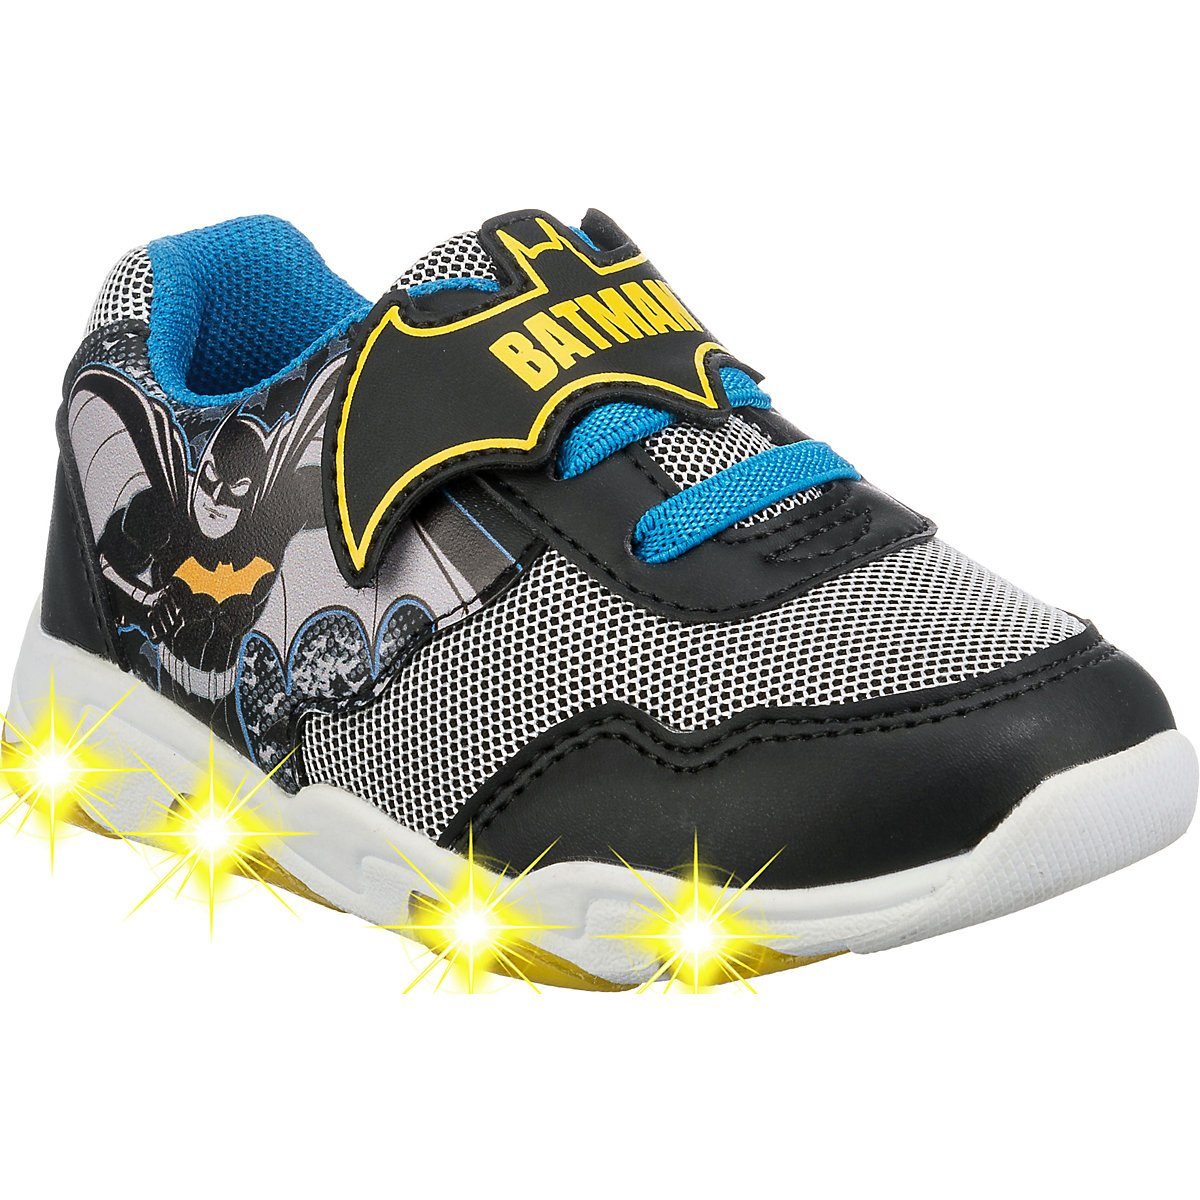 Schuhe Alle Sneaker Batman Batman Sneakers Low für Jungen Sneaker